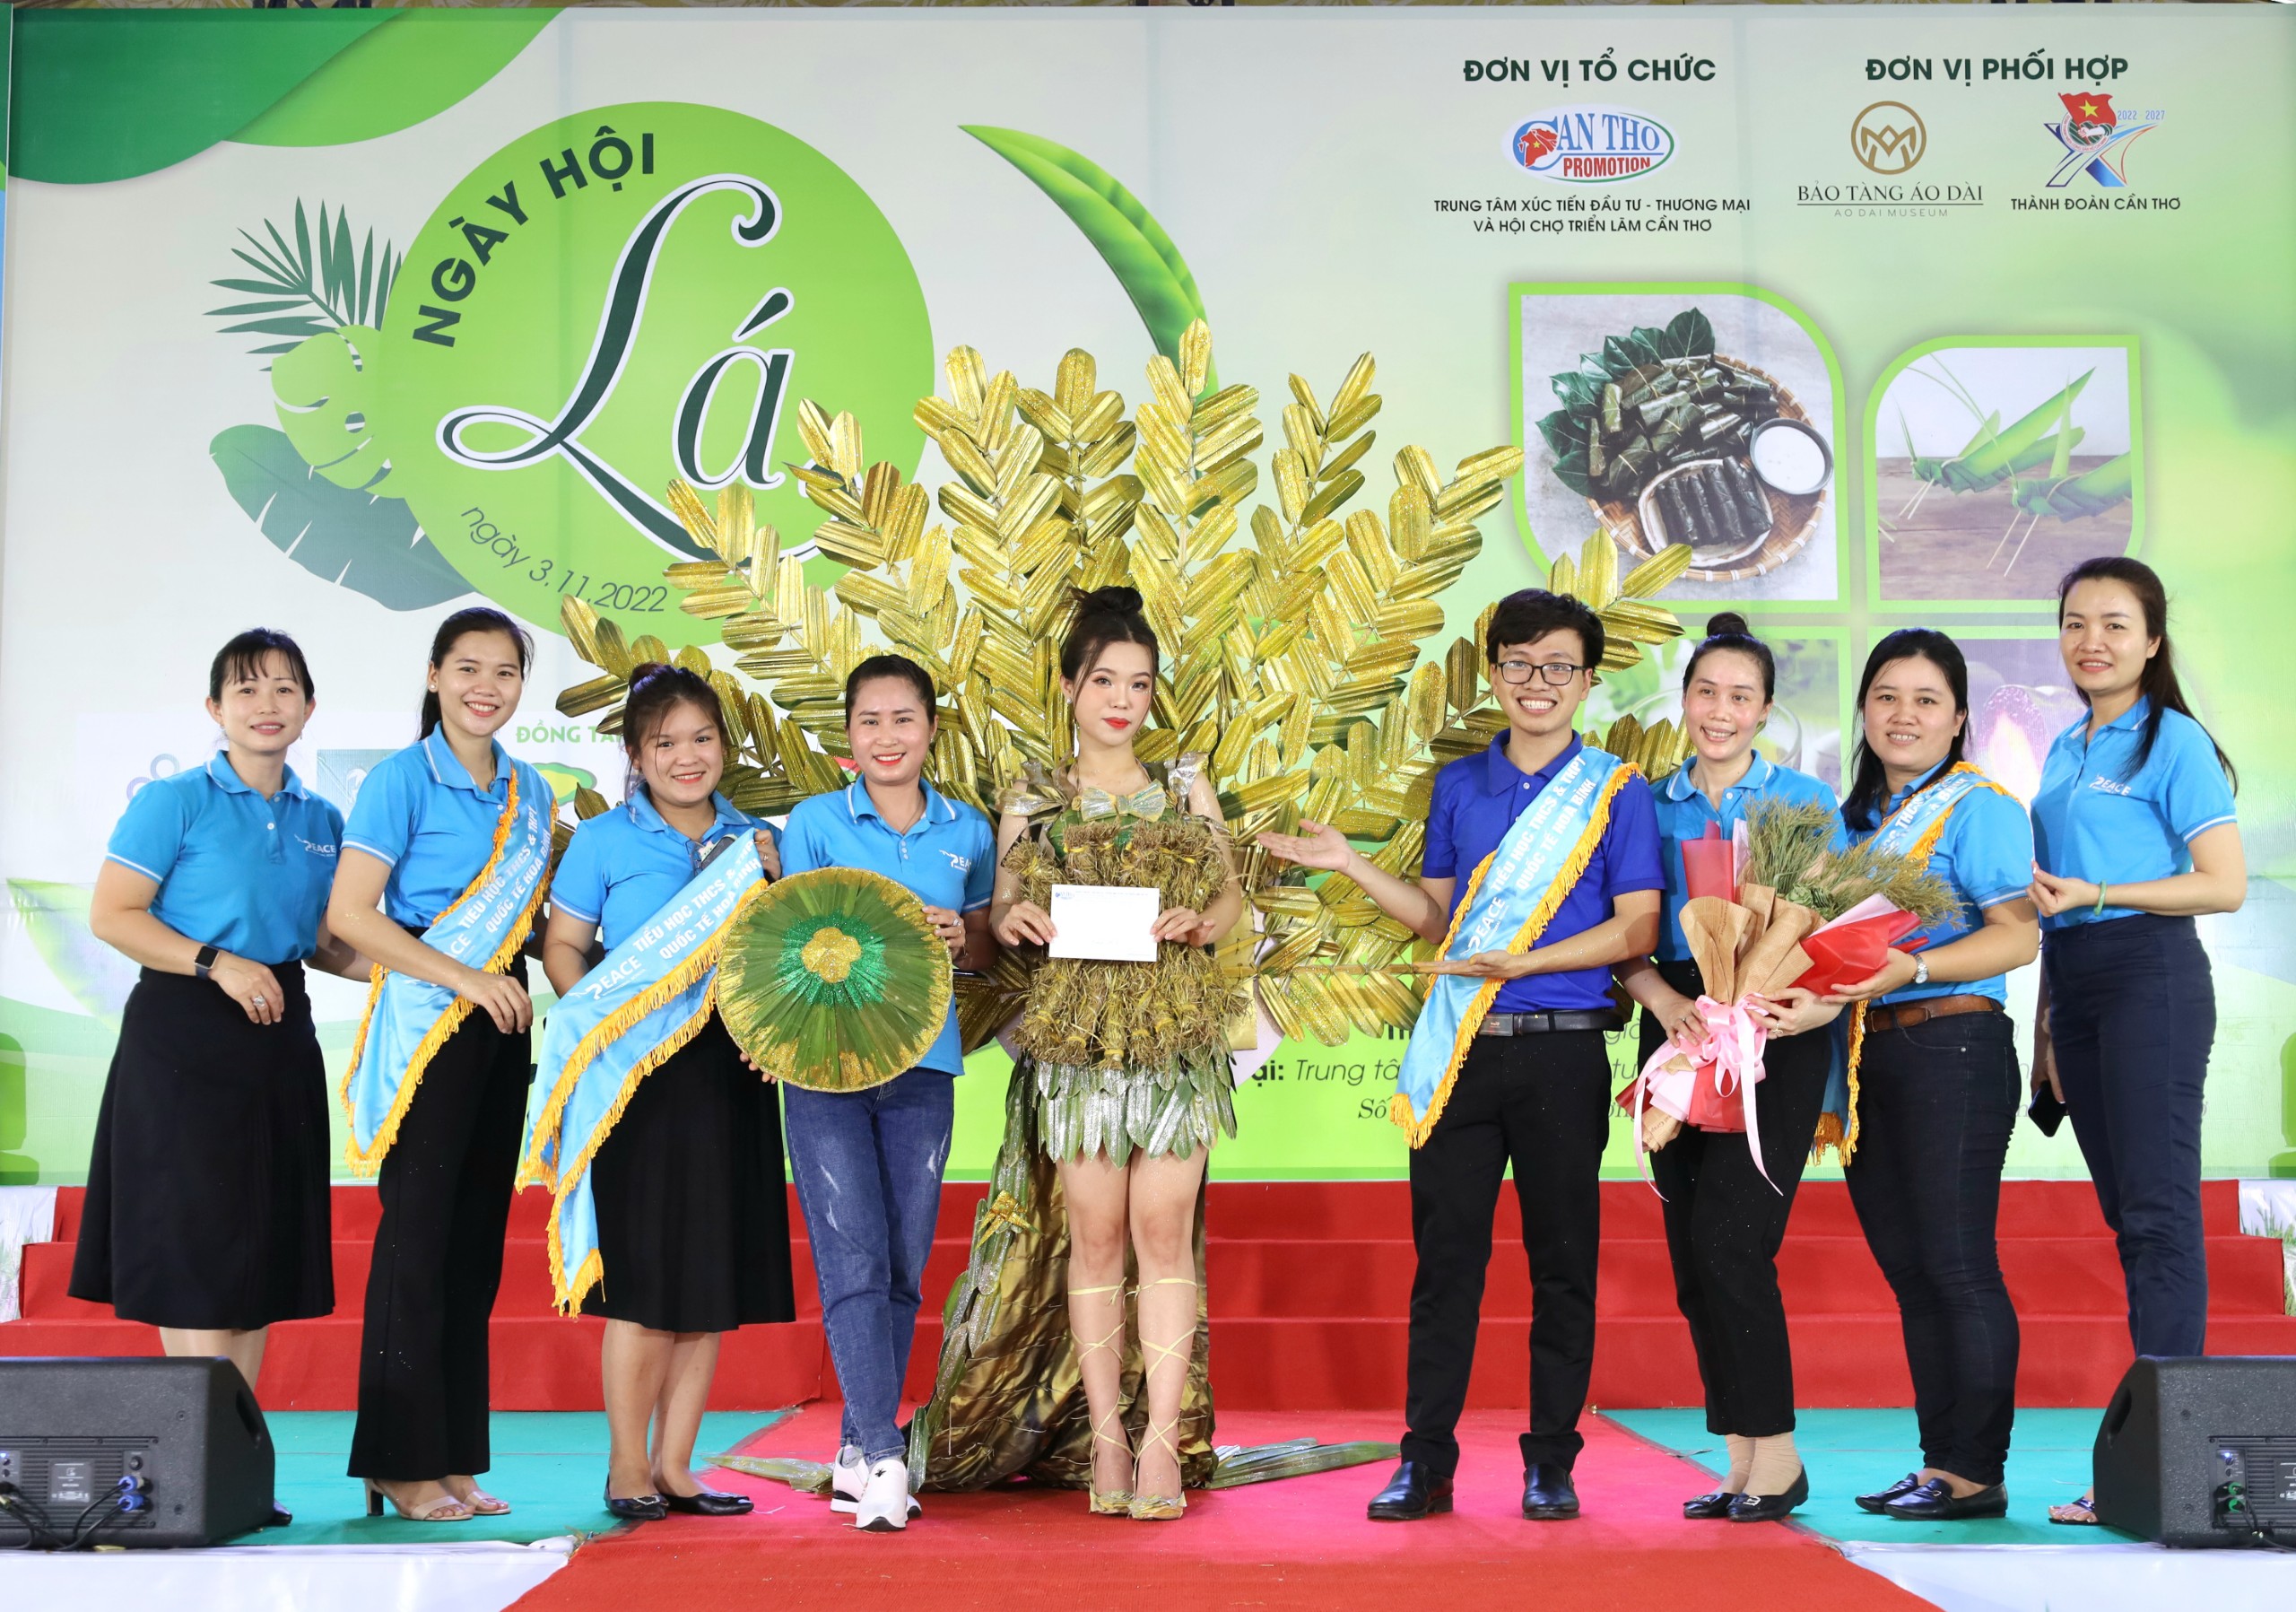 Trường Quốc tế Hòa Bình, quận Ninh Kiều đạt giải nhất phần thi thiết kế, trình diễn thời trang làm từ lá với thông điệp kêu gọi bảo vệ môi trường.